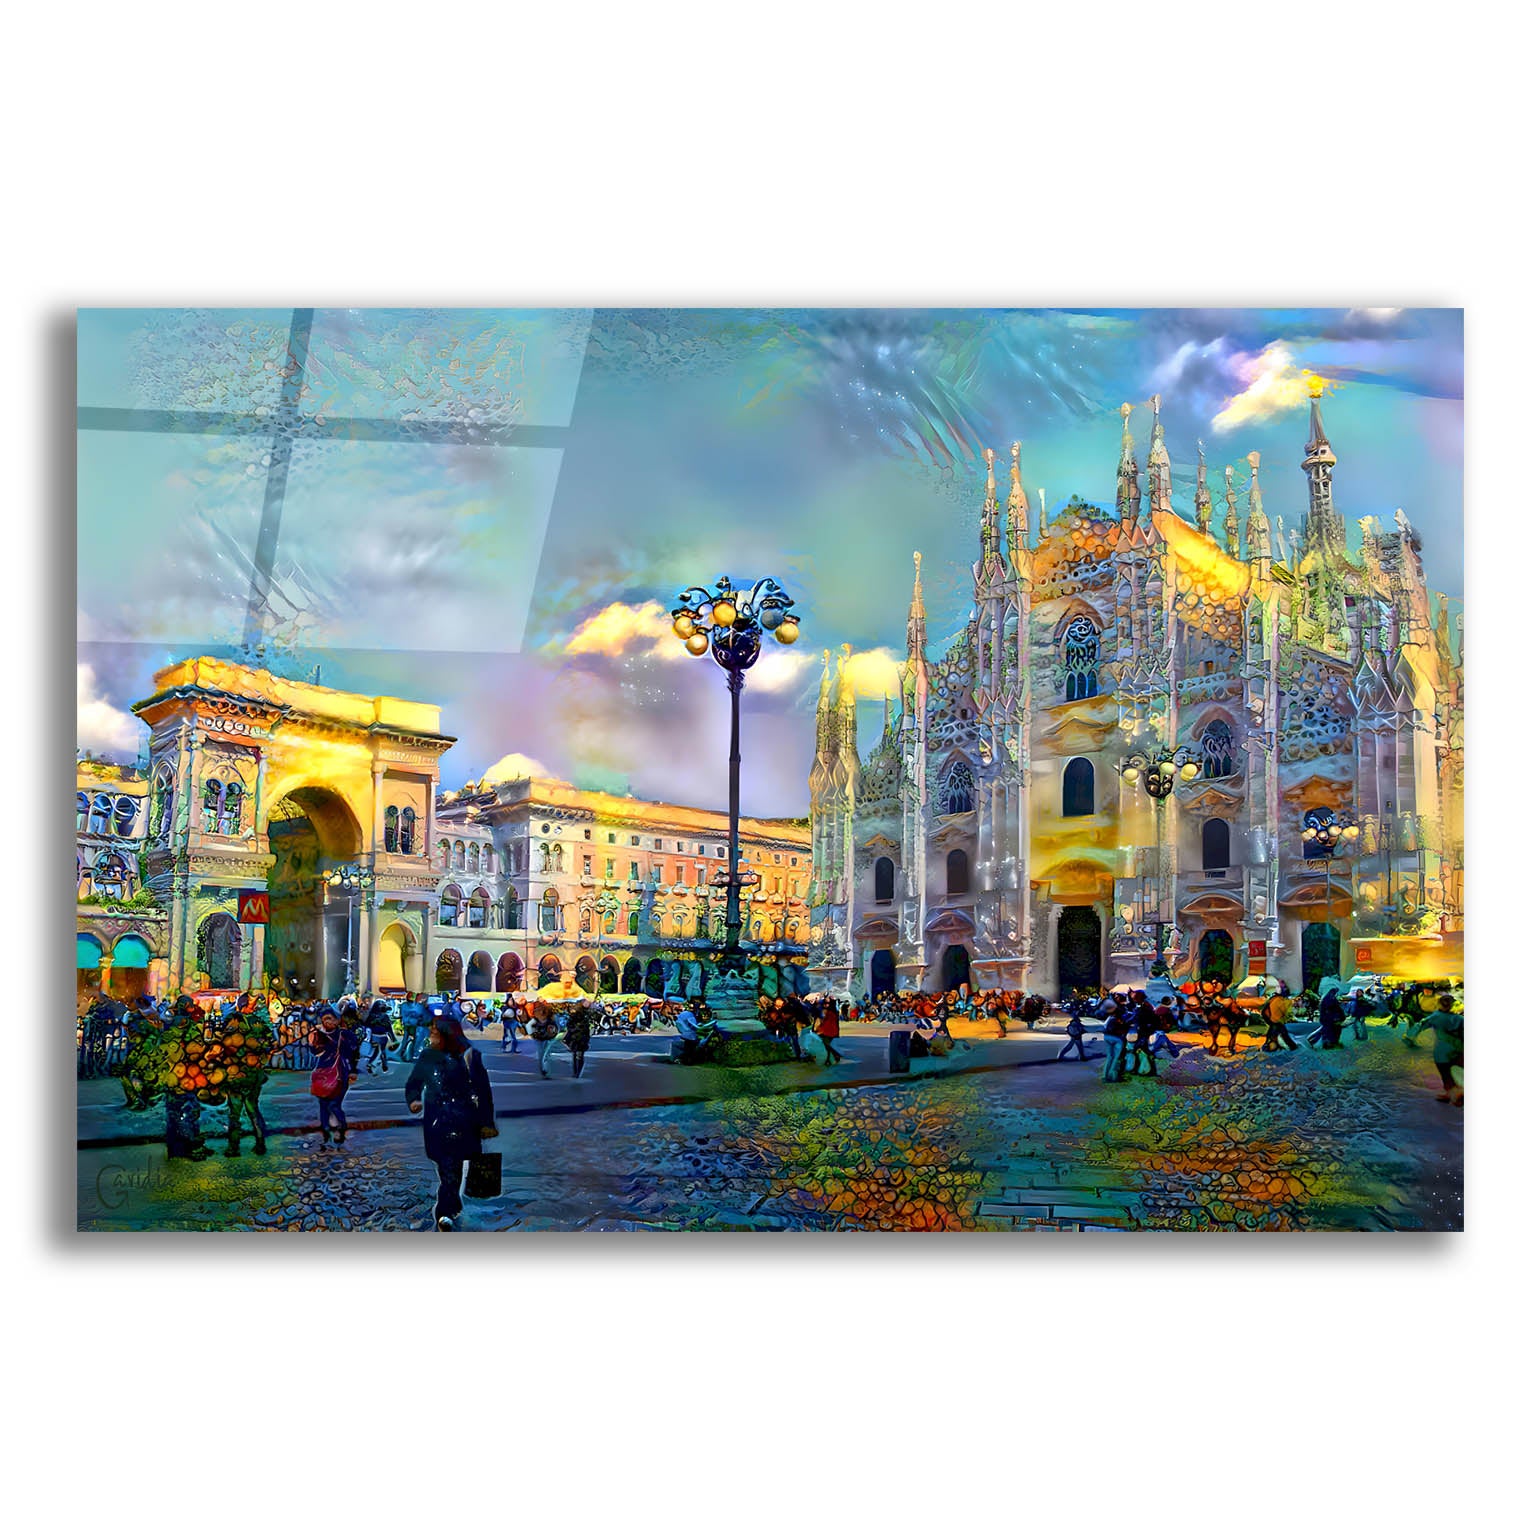 Epic Art 'Milan Italy Piazza del Duomo' by Pedro Gavidia, Acrylic Glass Wall Art,16x12